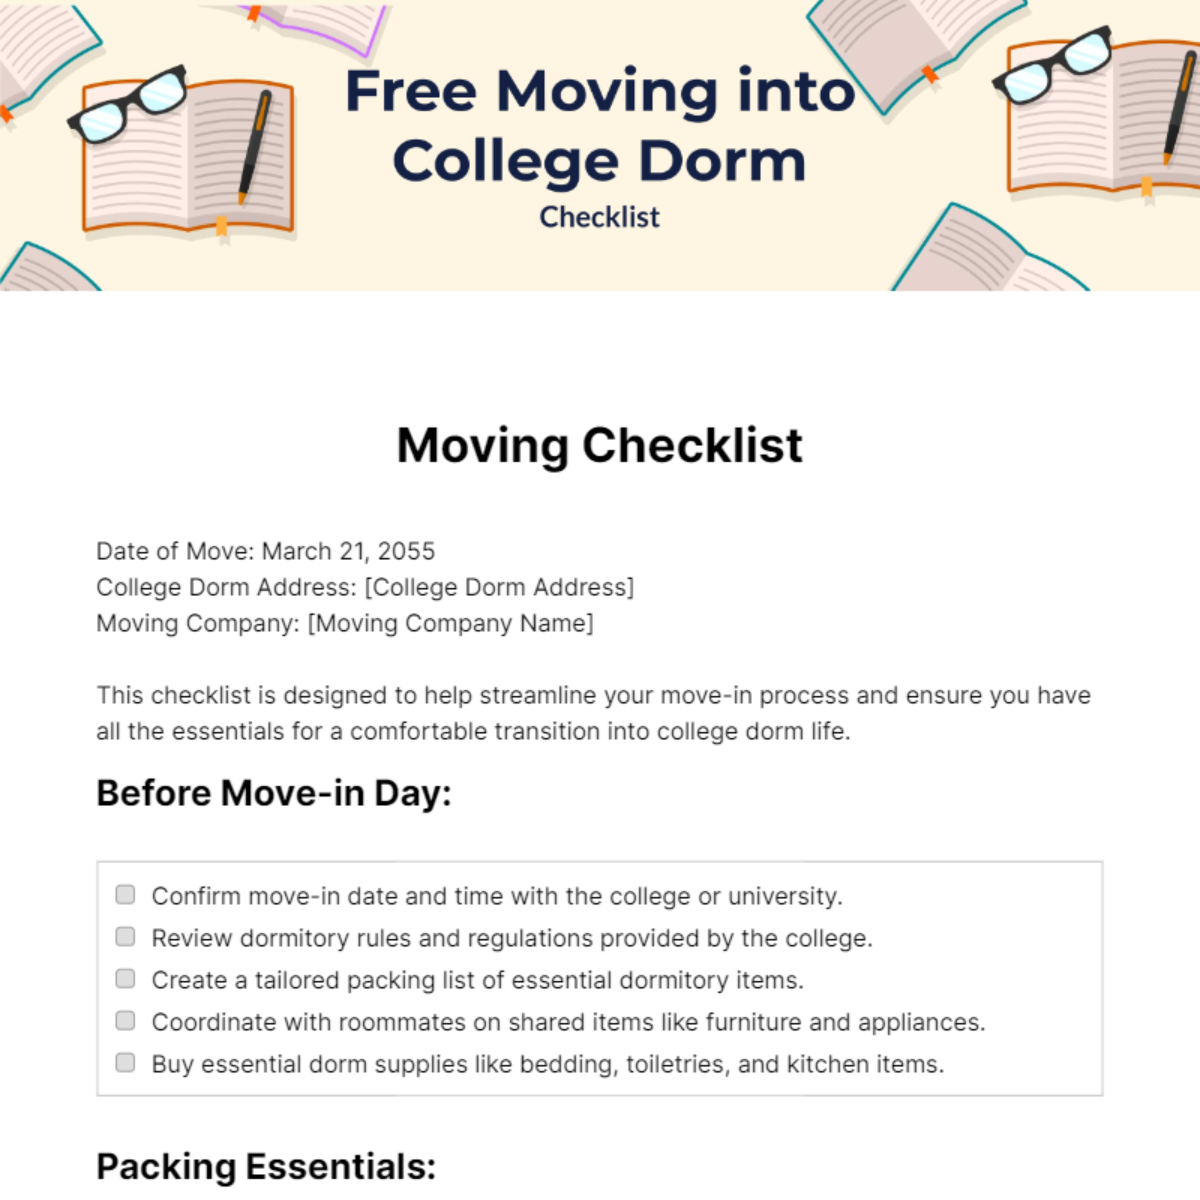 Moving into College Dorm Checklist Template